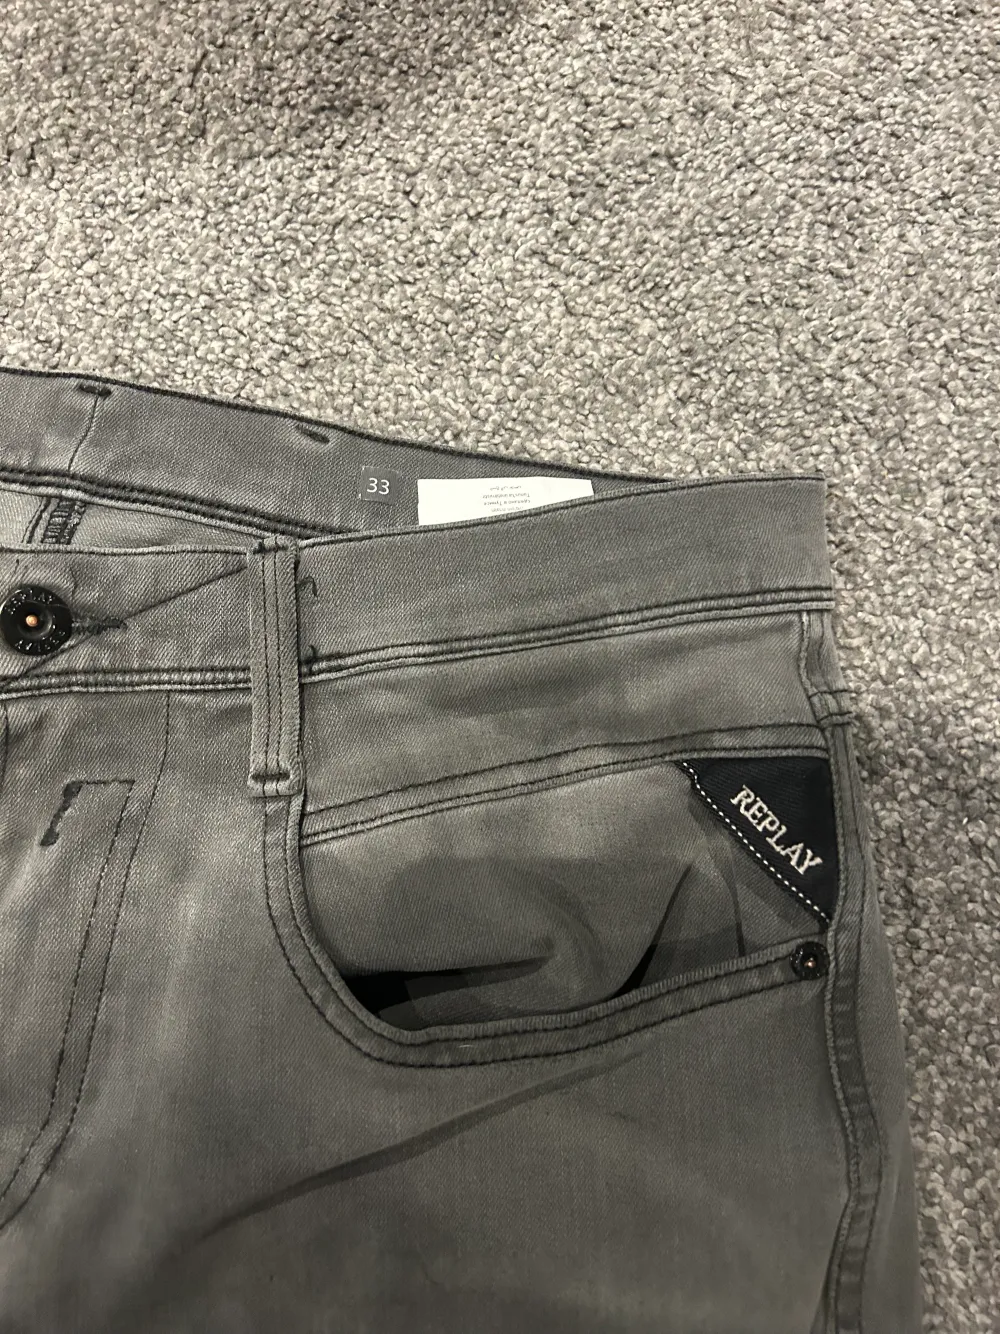 Replay jeans  Storlek 33  Köpt på NK Skick 8.5/10  Modellen heter anbass Om det är några frågor är det bara att skriva ✅🙌🙌. Jeans & Byxor.